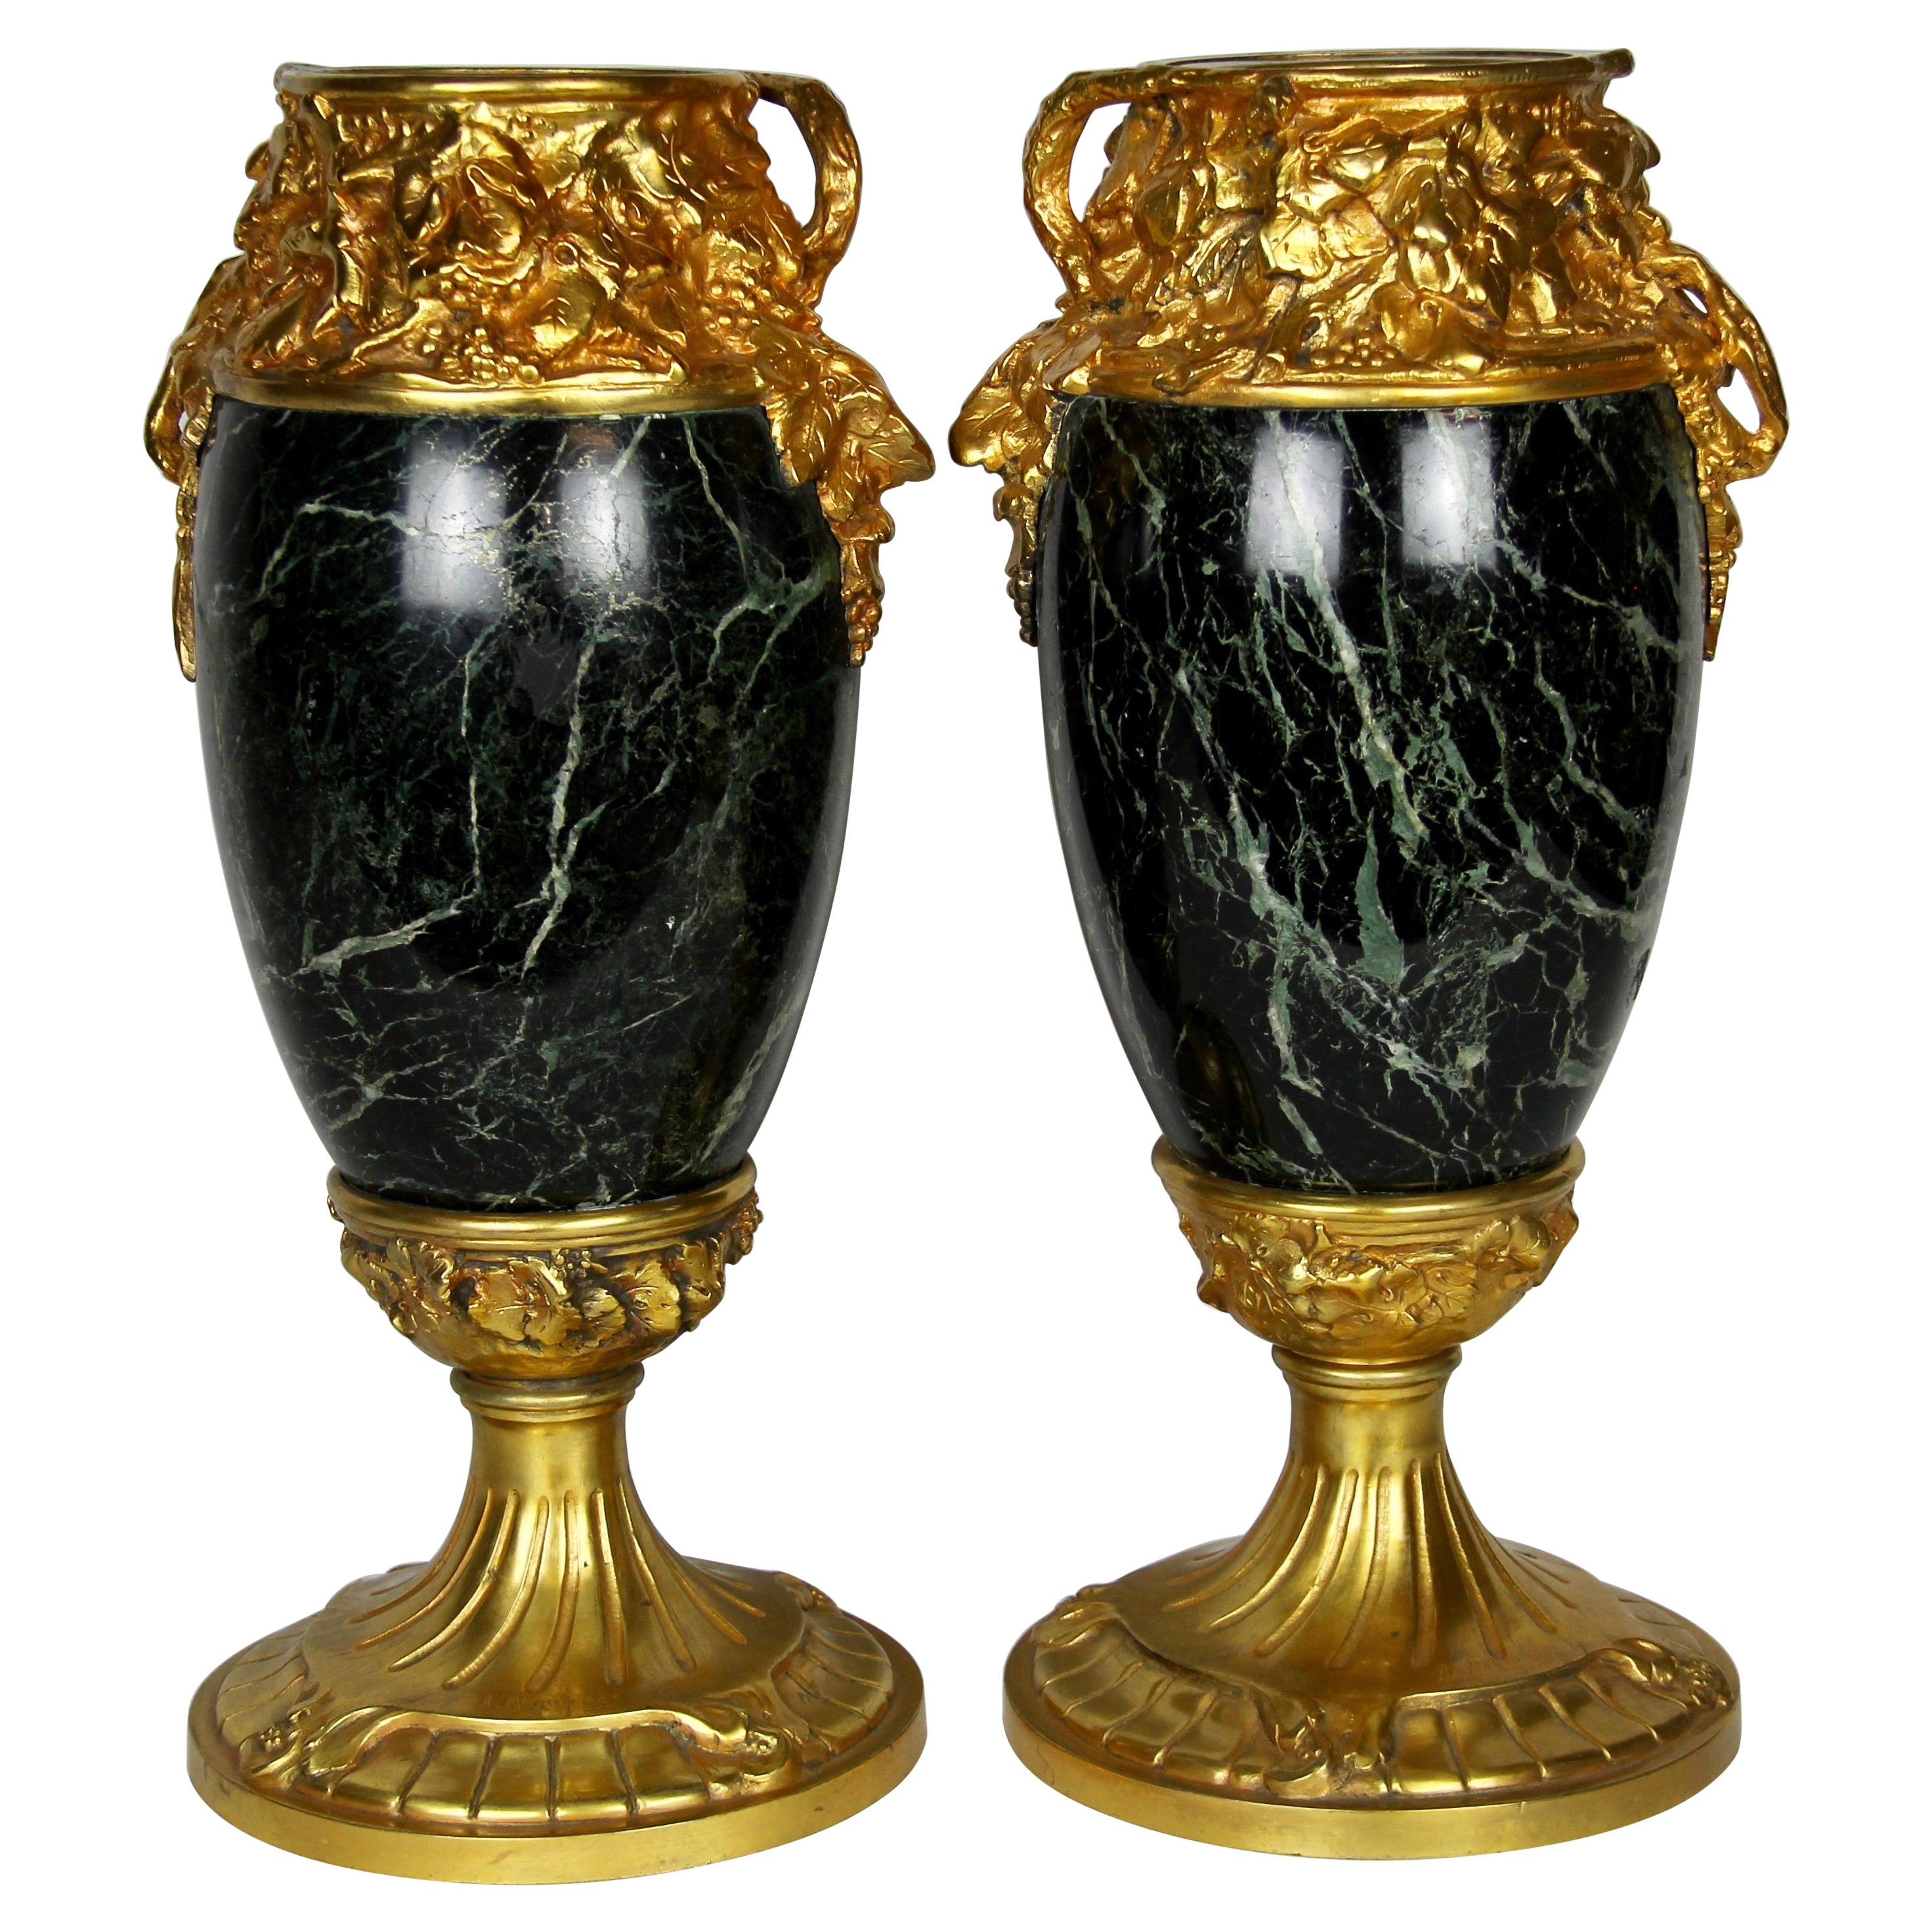 Luxus Prunkvase Porzellan Bronze Jugendstil Blumenvase Antik Vase Pokal Amphore 